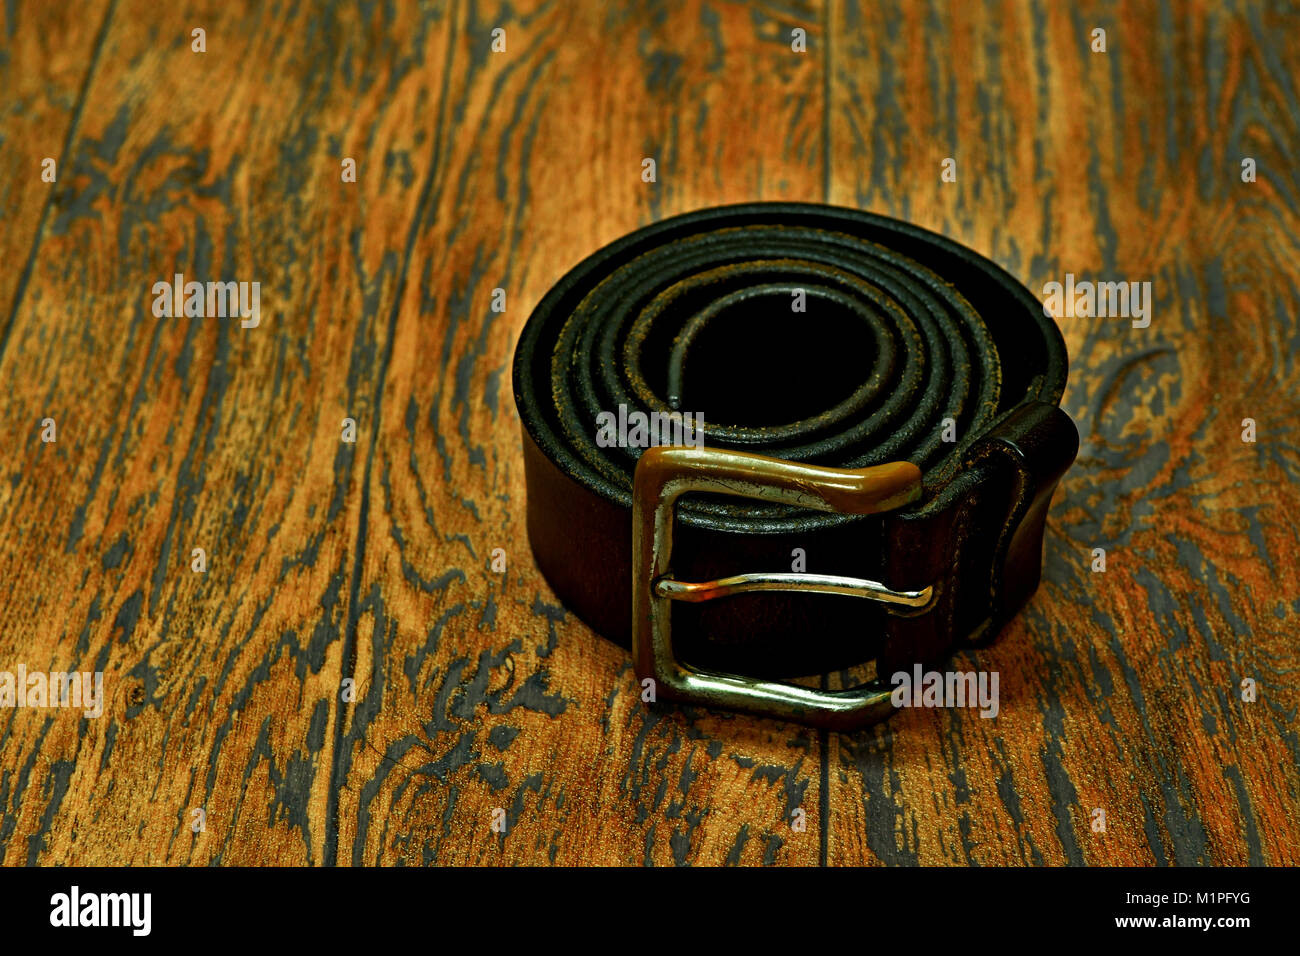 Los hombres cinturón de cuero deportivo y hombre de corbata por y de madera Fotografía de stock - Alamy